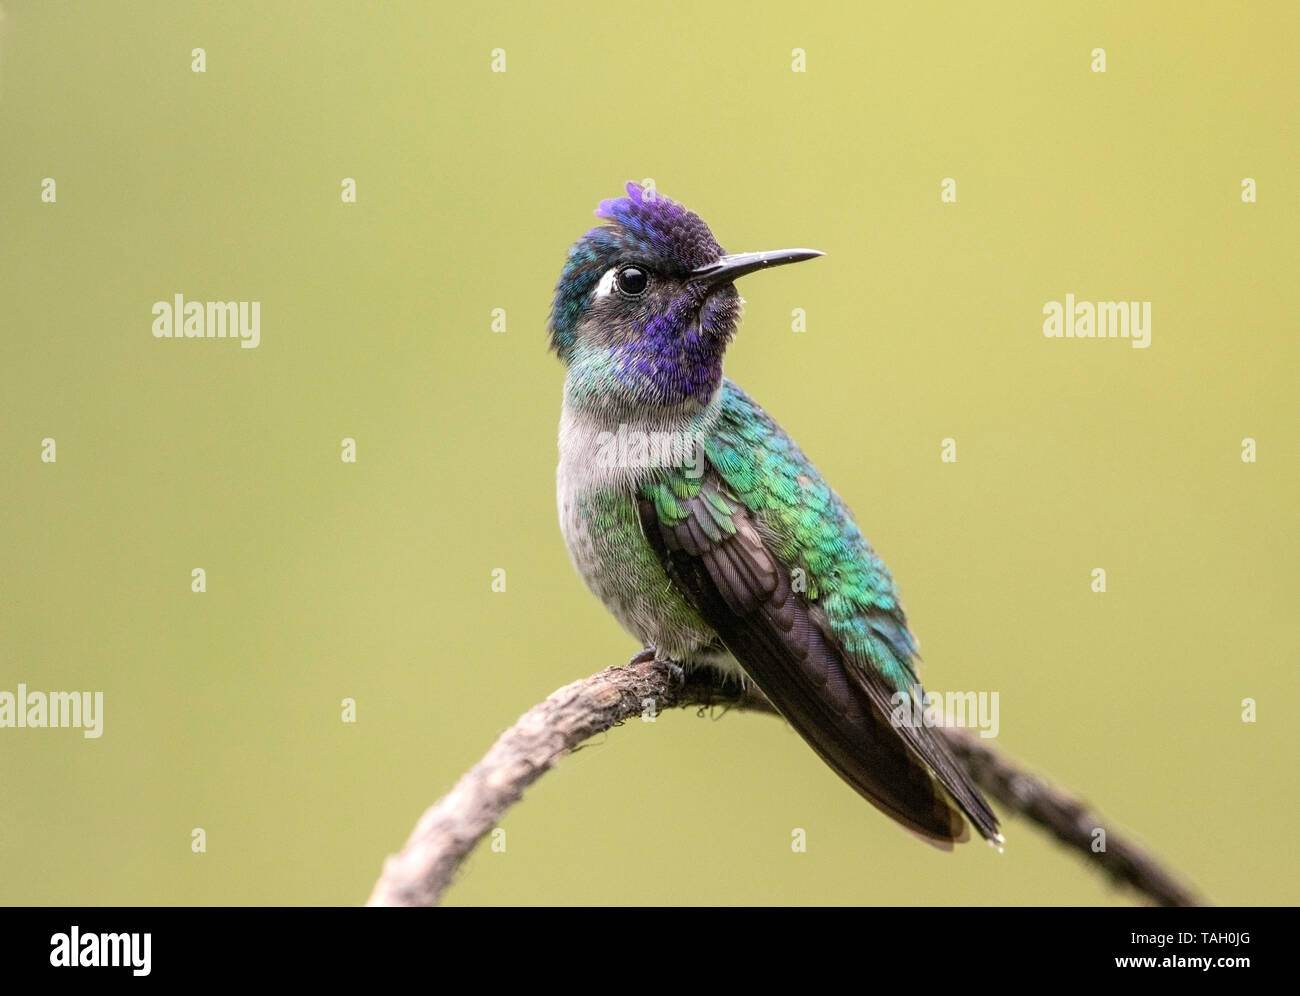 Violeta-encabezada colibrí, el macho adulto posado sobre twig, Reserva El Tapir, Costa Rica el 25 de marzo de 2019 Foto de stock